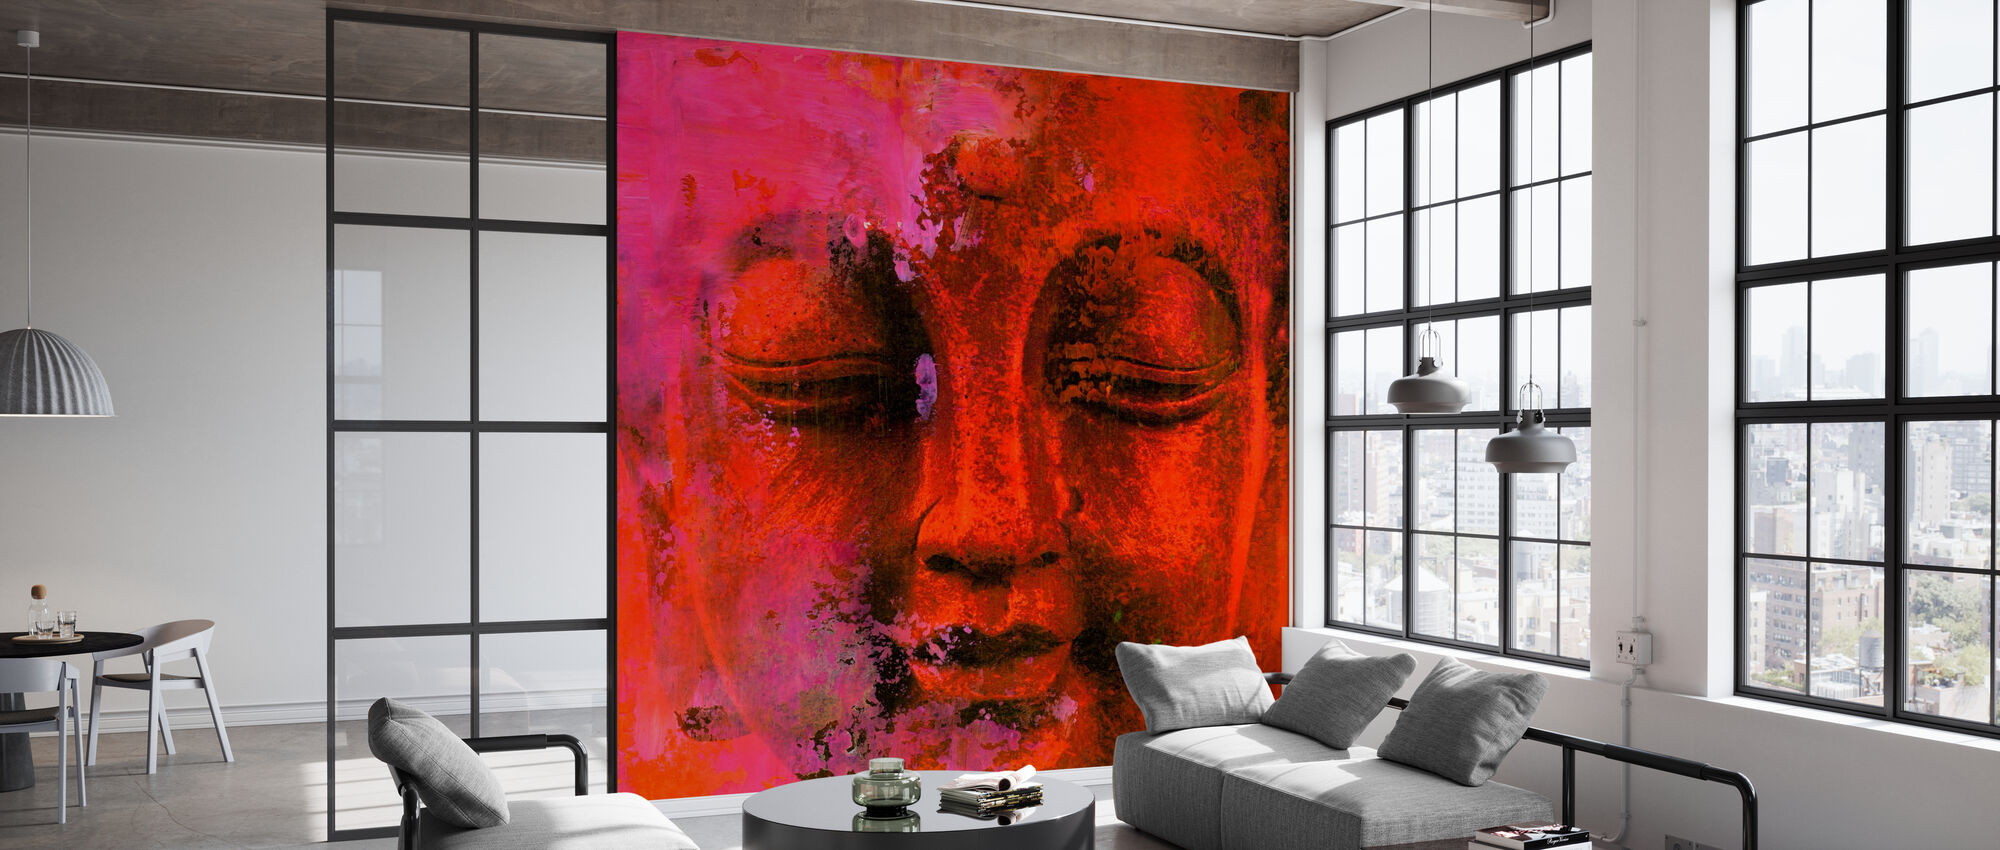 Red Buddha – wall murals online – Photowall